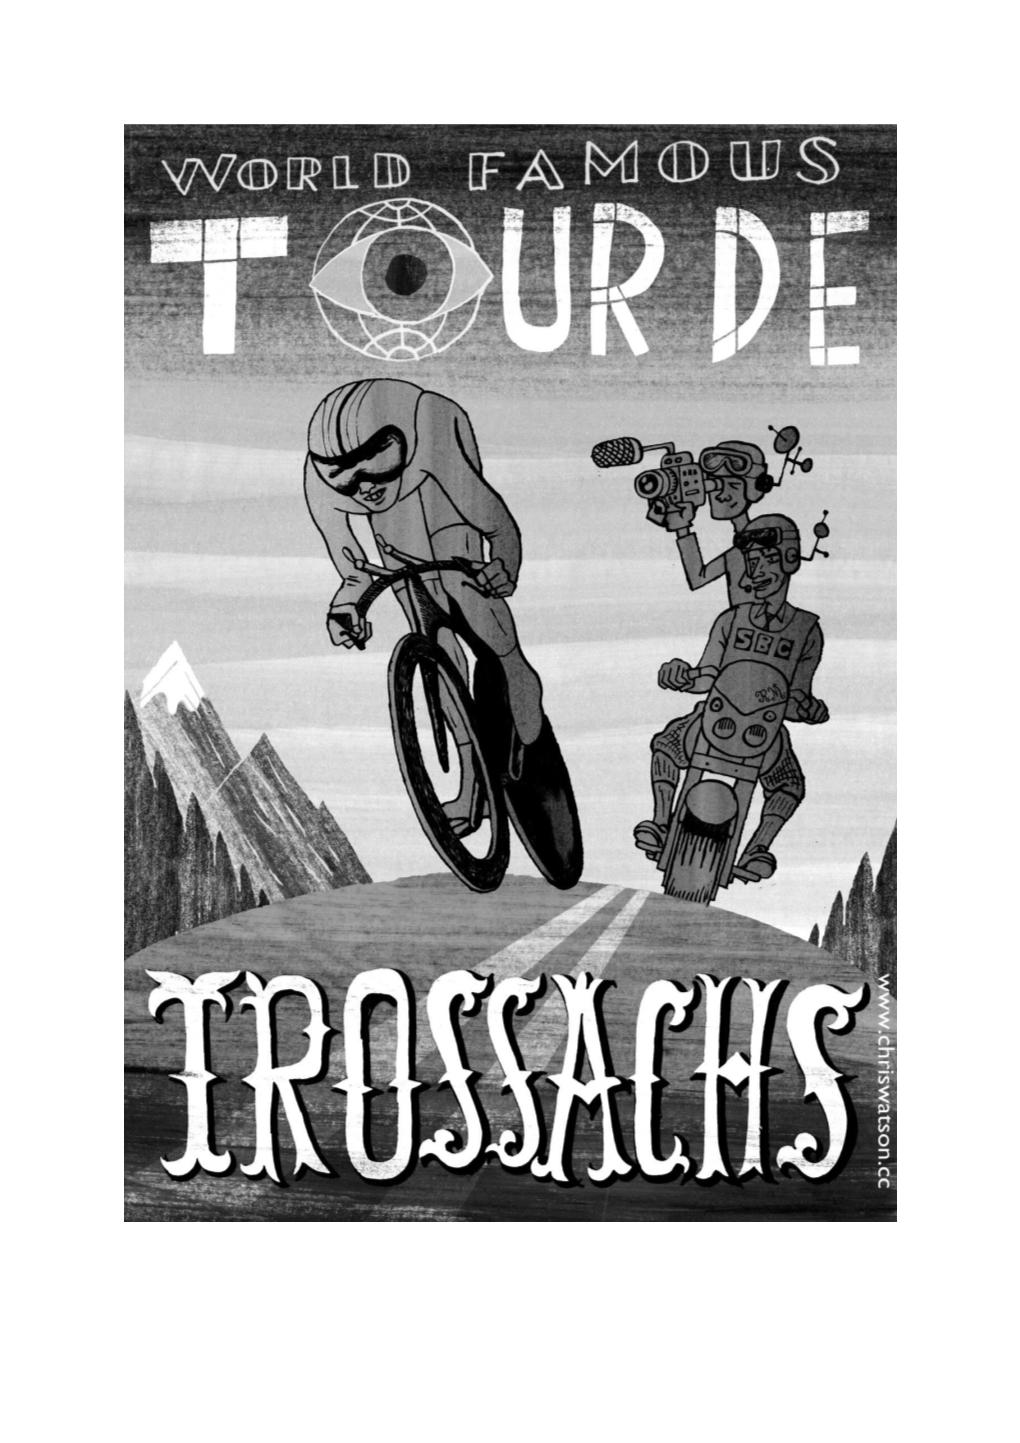 Tour De Trossachs 2014